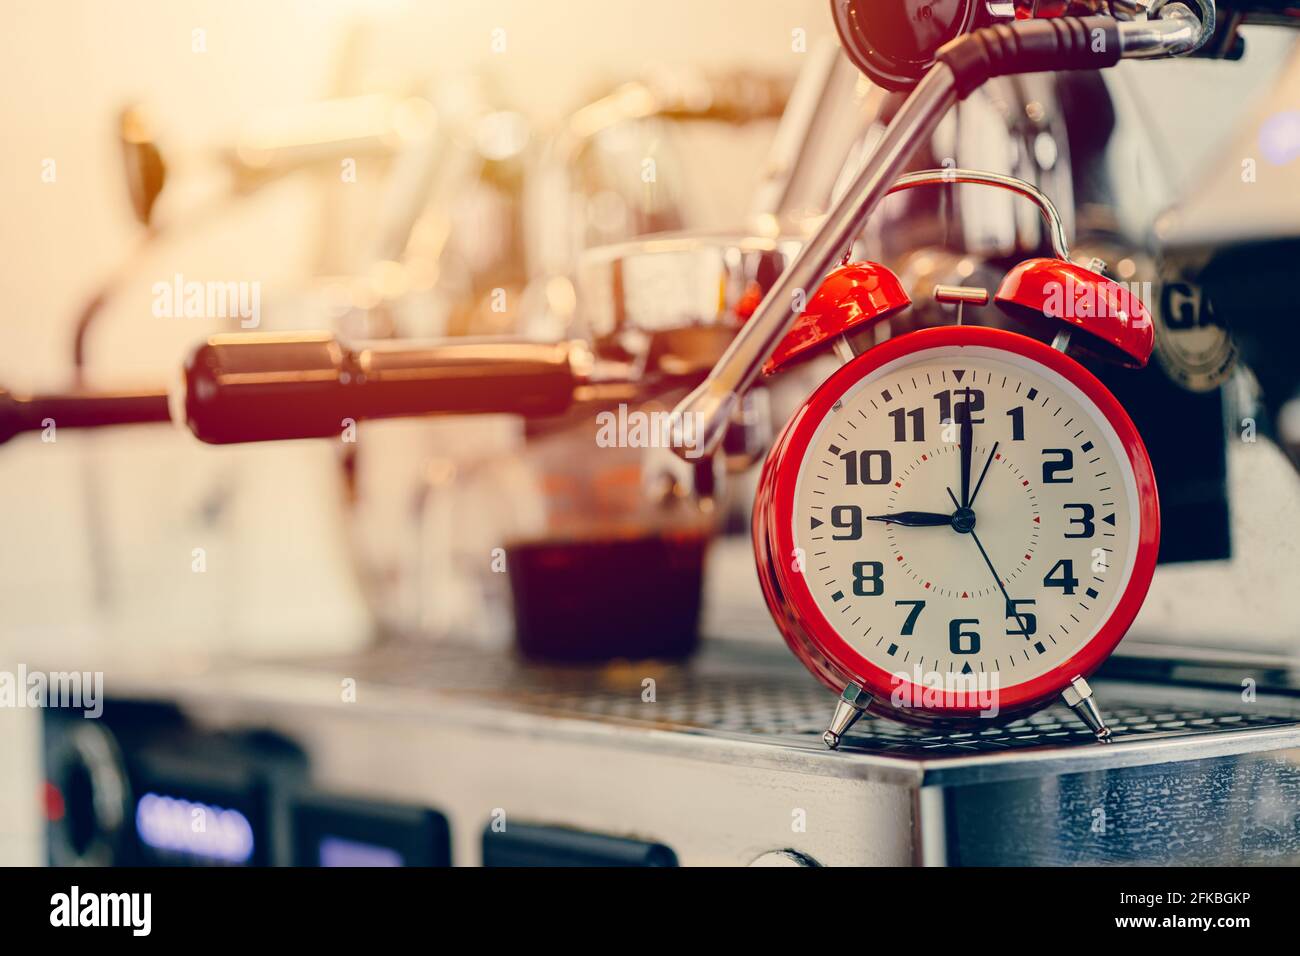 Durée de préparation, réveil avec machine à espresso pour préparer le concept de la minuterie du café Banque D'Images